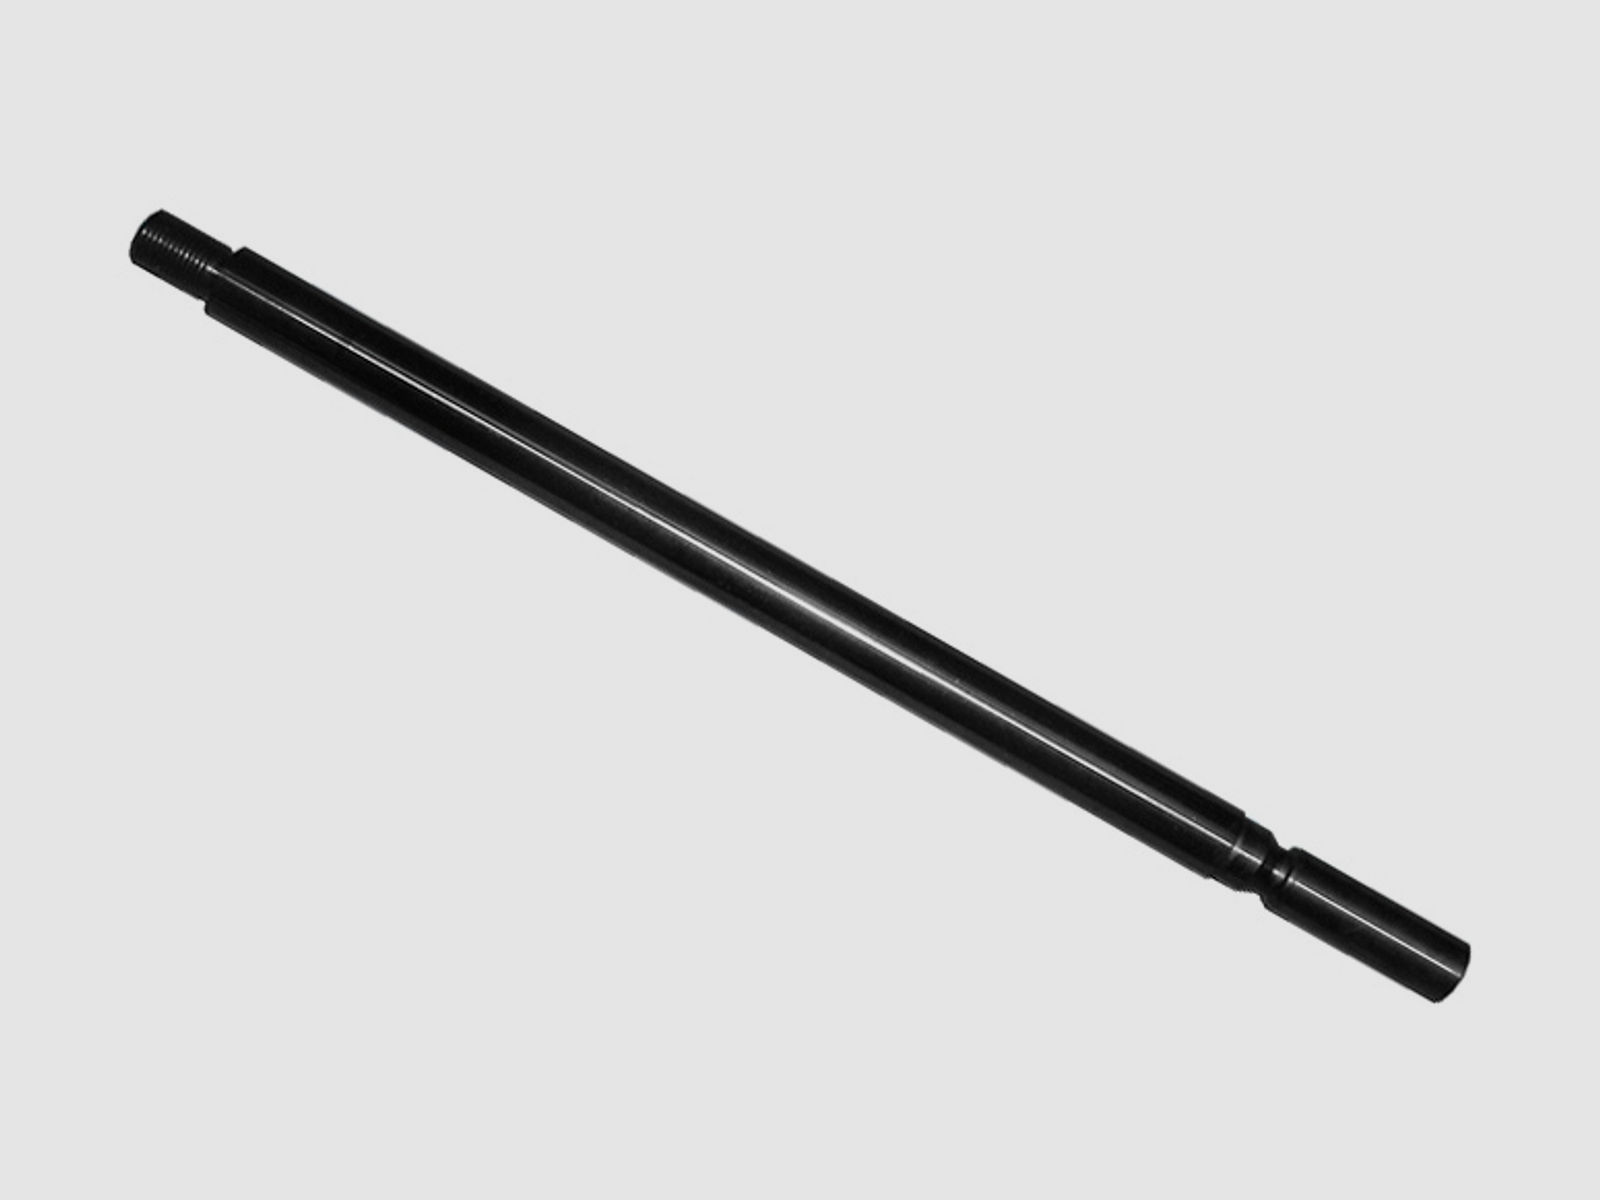 Wechsellauf mit SchalldĂ¤mpfergewinde 31 cm Kal. 4,5mm (F) fĂĽr Pressluftgewehr Weihrauch HW 100 (P18)